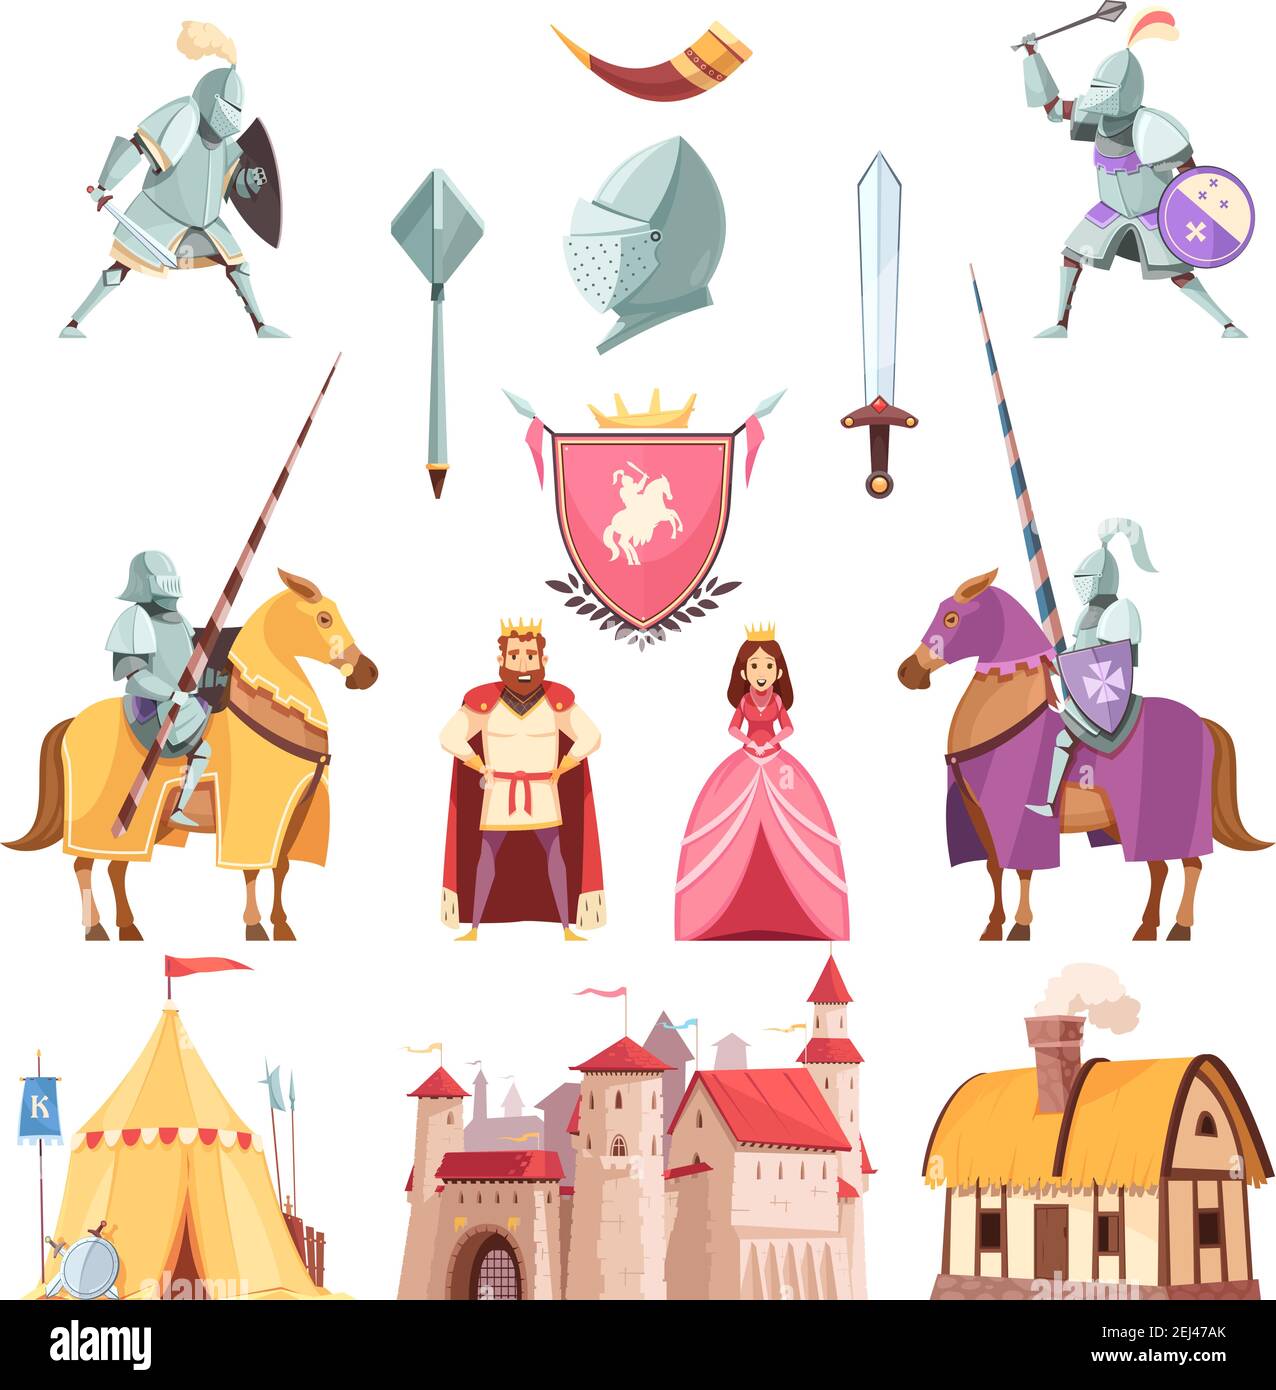 Mittelalterliche königliche heraldry Cartoon-Ikonen mit Burg Reiter in gesetzt Rüstung Turnier König Ritter Prinzessin isoliert Vektor-Illustration Stock Vektor